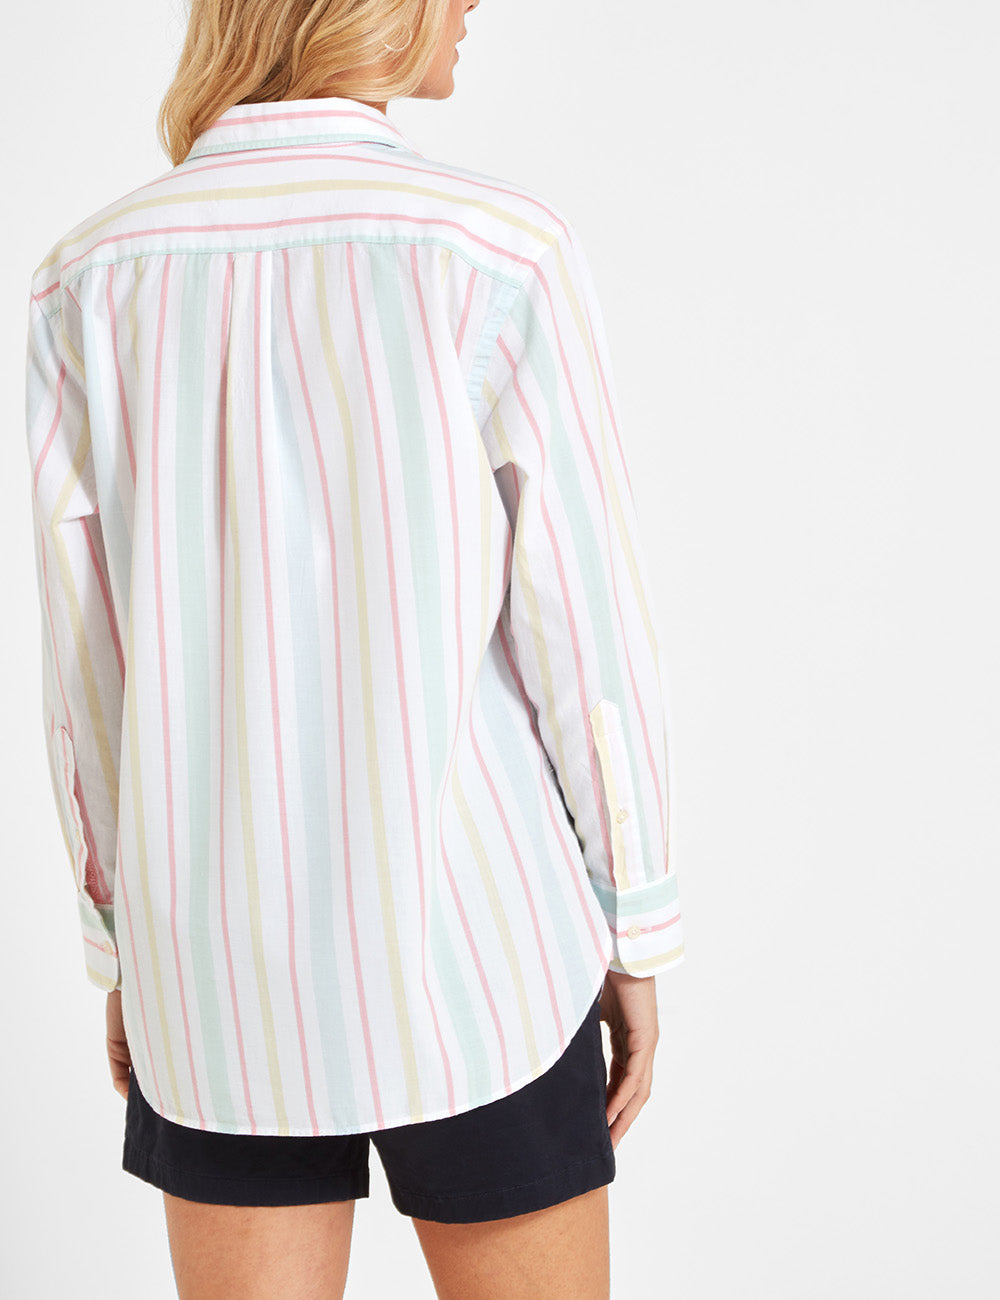 Schoffel Walberswick Cotton Shirt - Multi Stripe